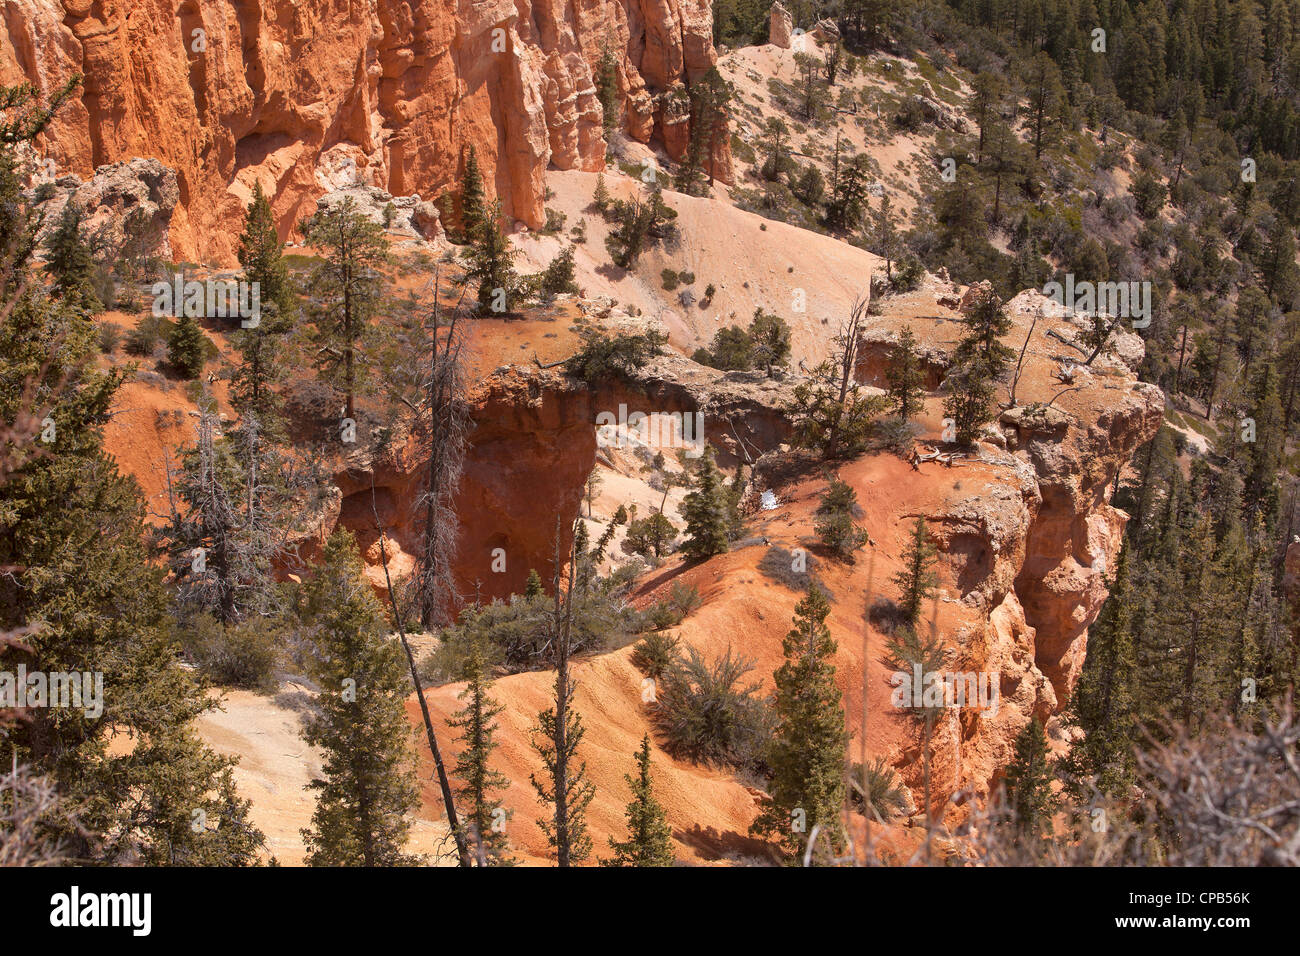 Bryce Canyon National Park, Utah. Sandstein-Formationen in der Wüste. Foto neu zu entfachen. Stockfoto